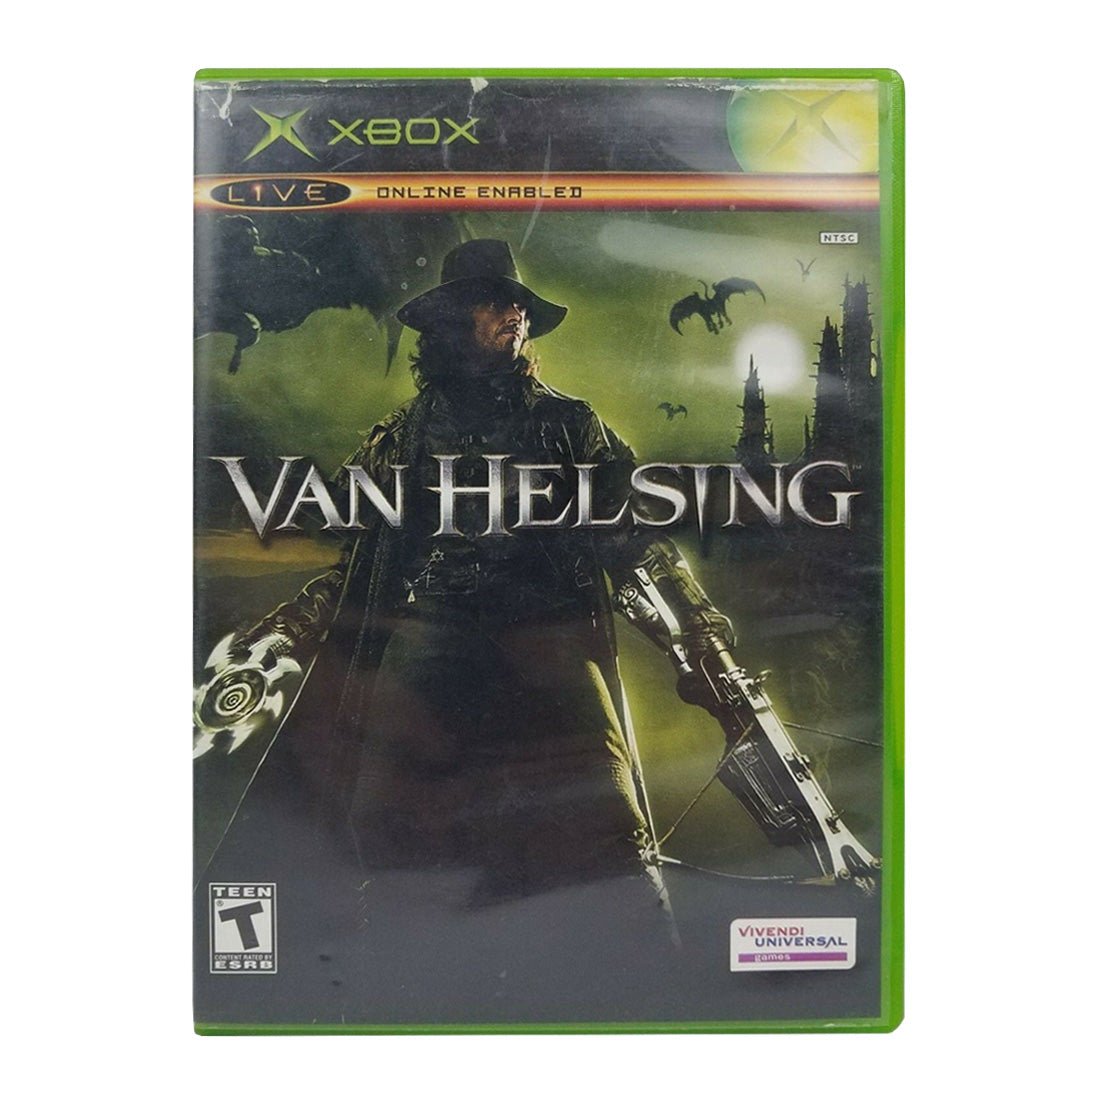 (Pre-Owned) Van Helsing - Xbox - ريترو - Store 974 | ستور ٩٧٤